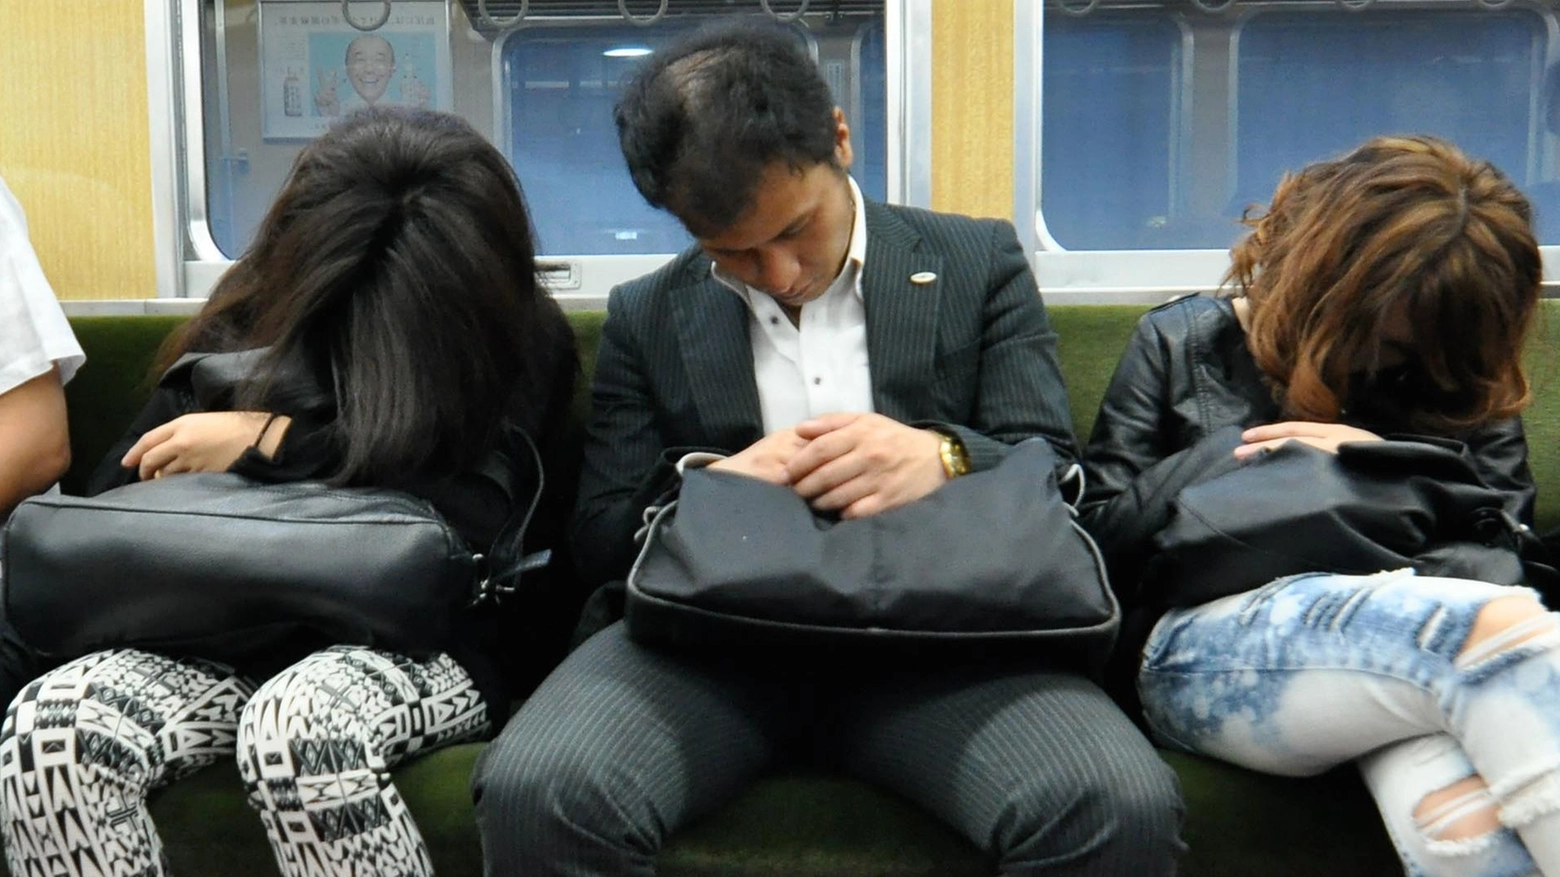 Lavoratori giapponesi addormentati sulla metropolitana